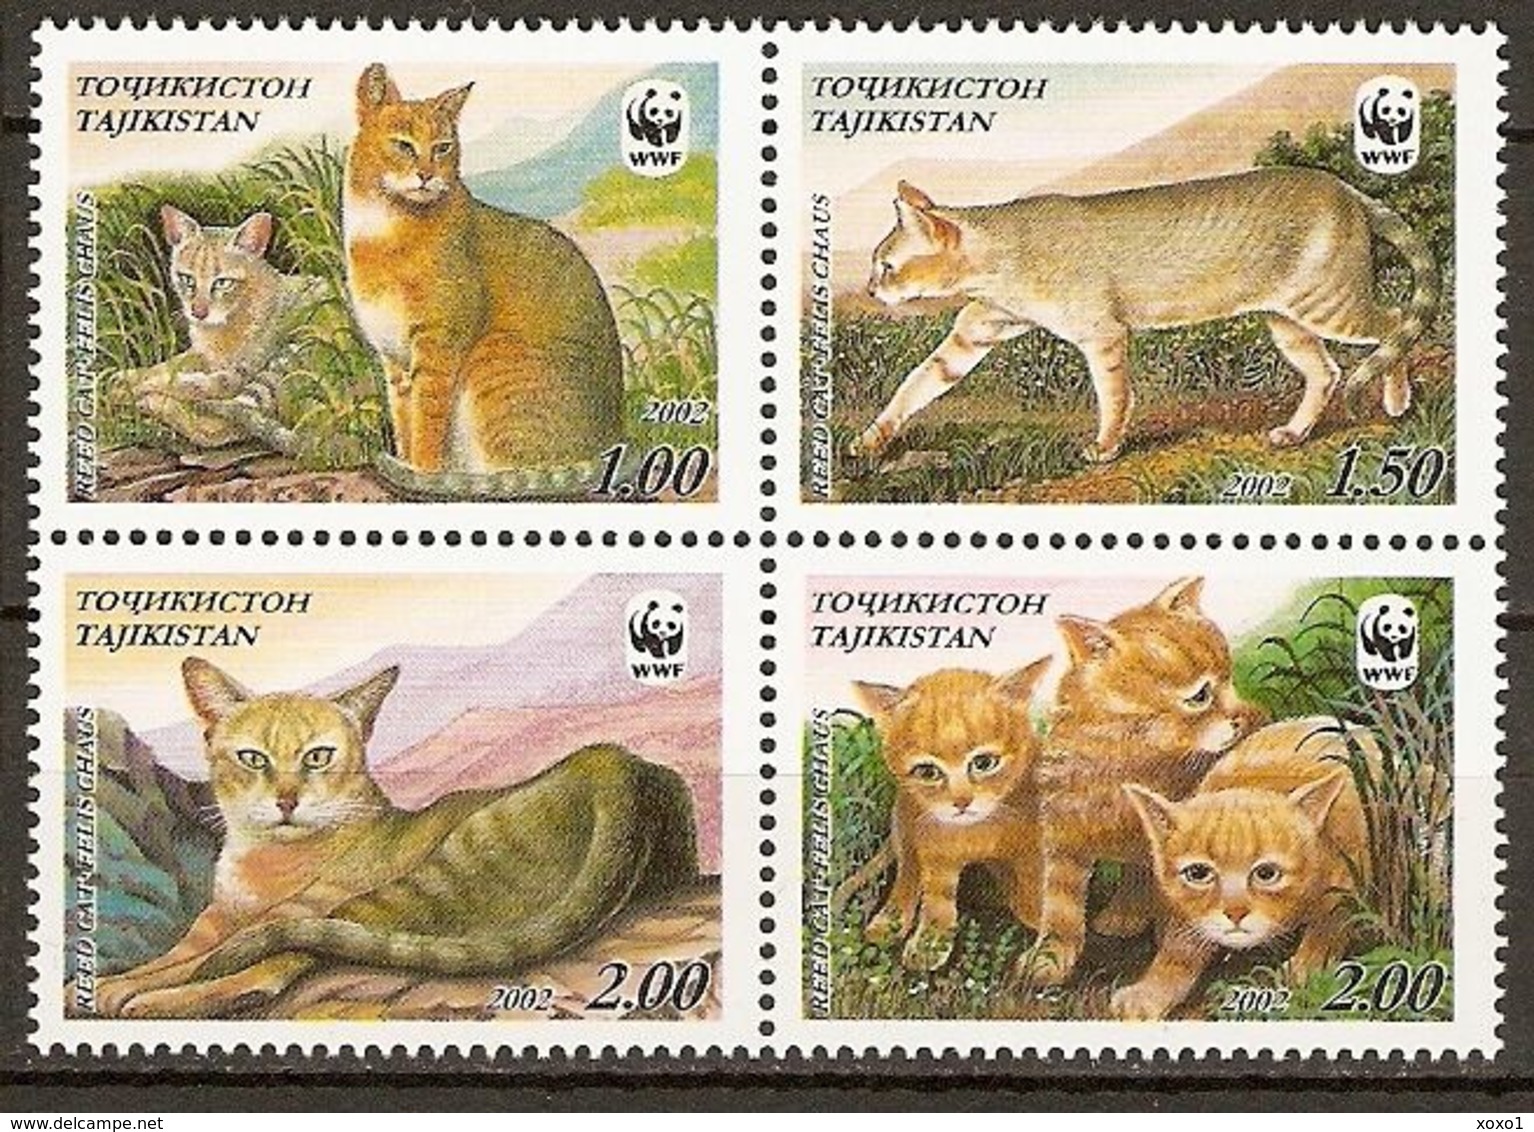 Tajikistan 2002 MiNr. 208 - 211  Tadschikistan ANIMALS Mammals Cats Of Prey Jungle Cat WWF 4v  MNH**  8,00 € - Tajikistan